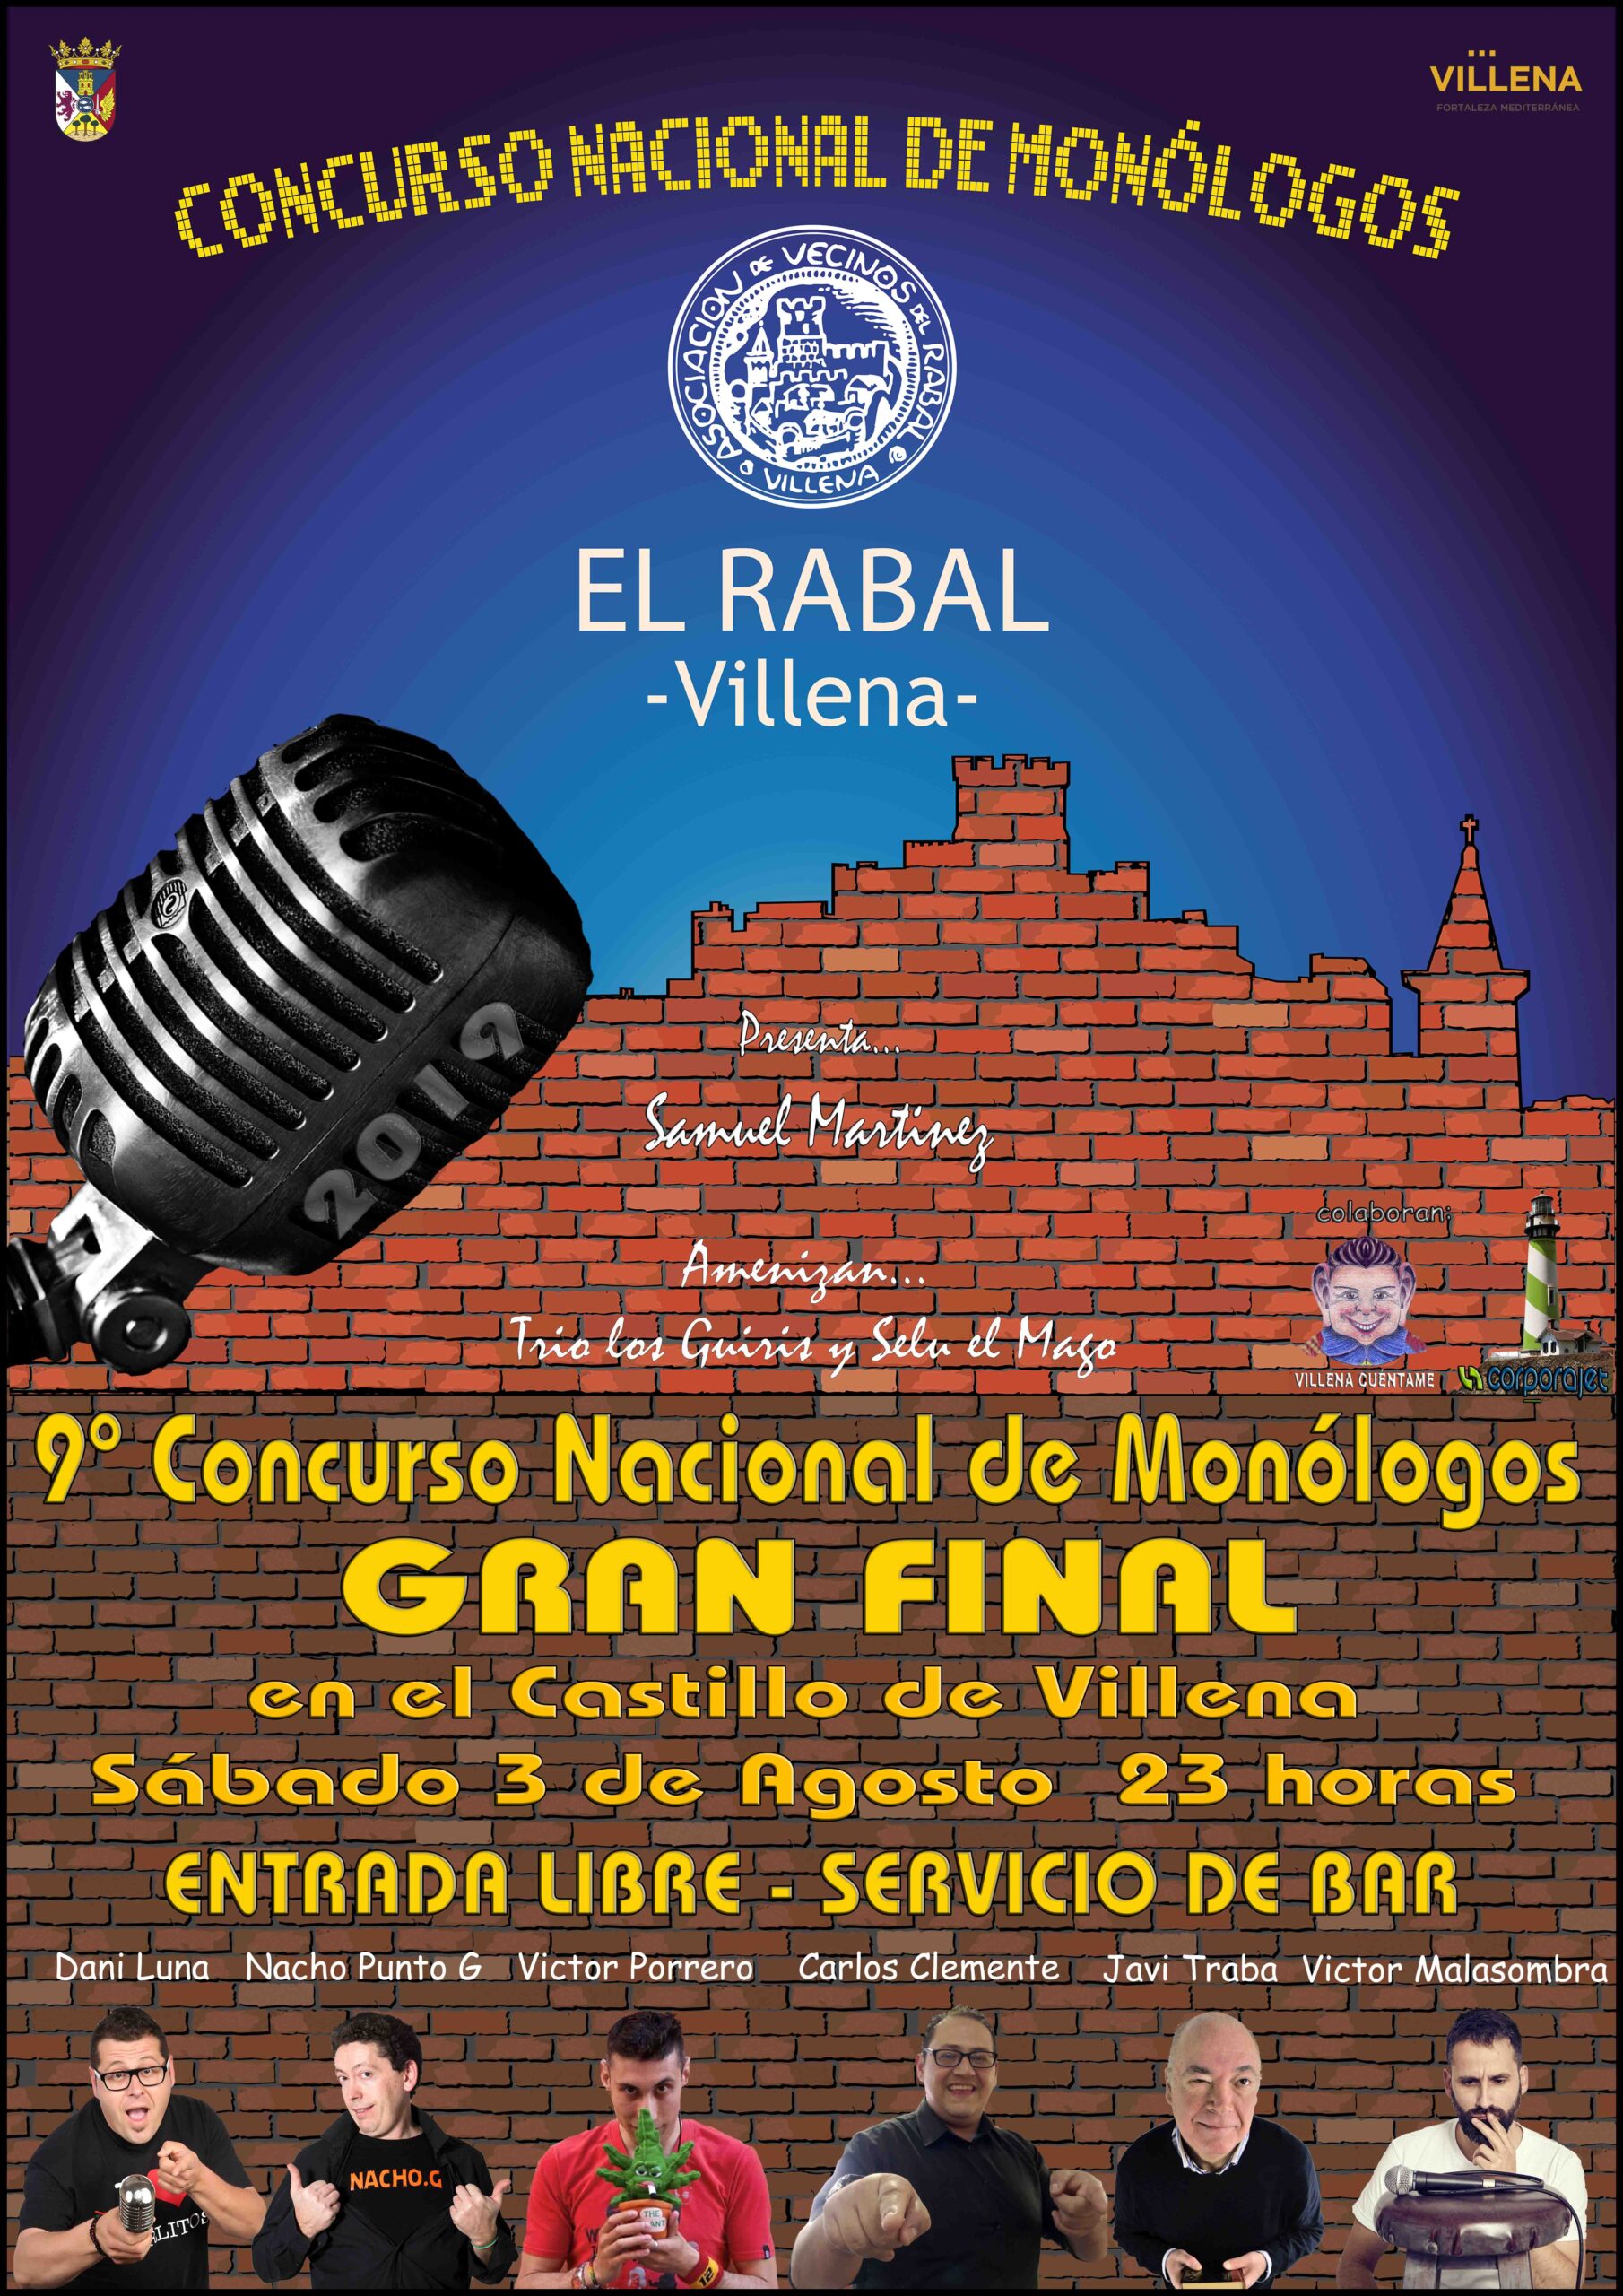 El concurso nacional de Monólogos El Rabal Villena da a conocer a los seis finalistas